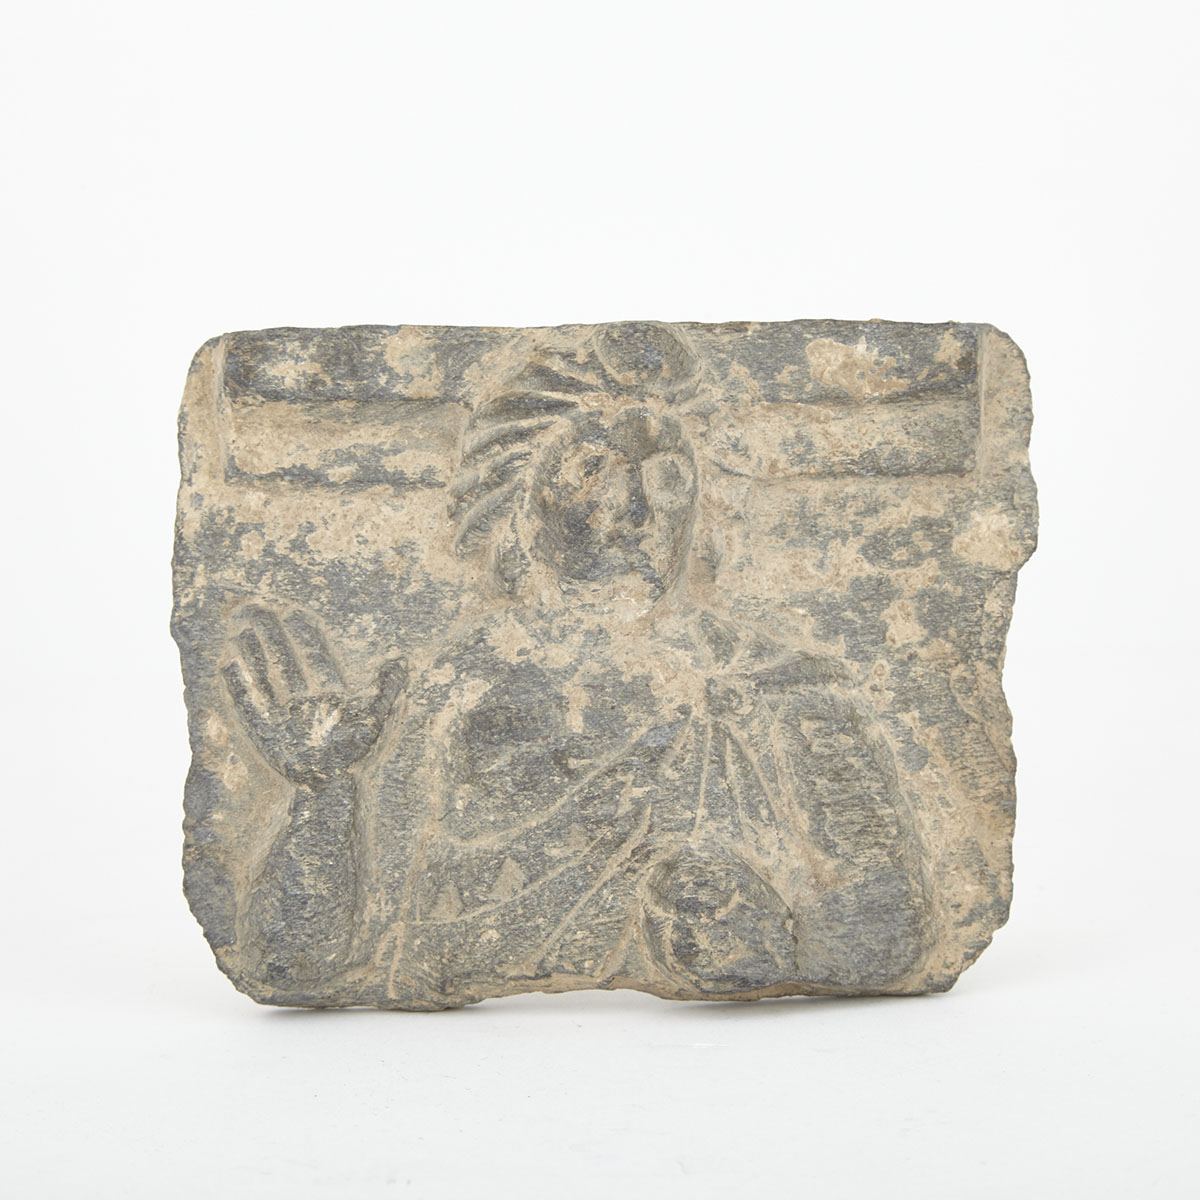 Gandarhan Greco-Buddhist Grey Schist Fragment Relief Image of Buddha, Swat Valley, Pakistan, 2nd century